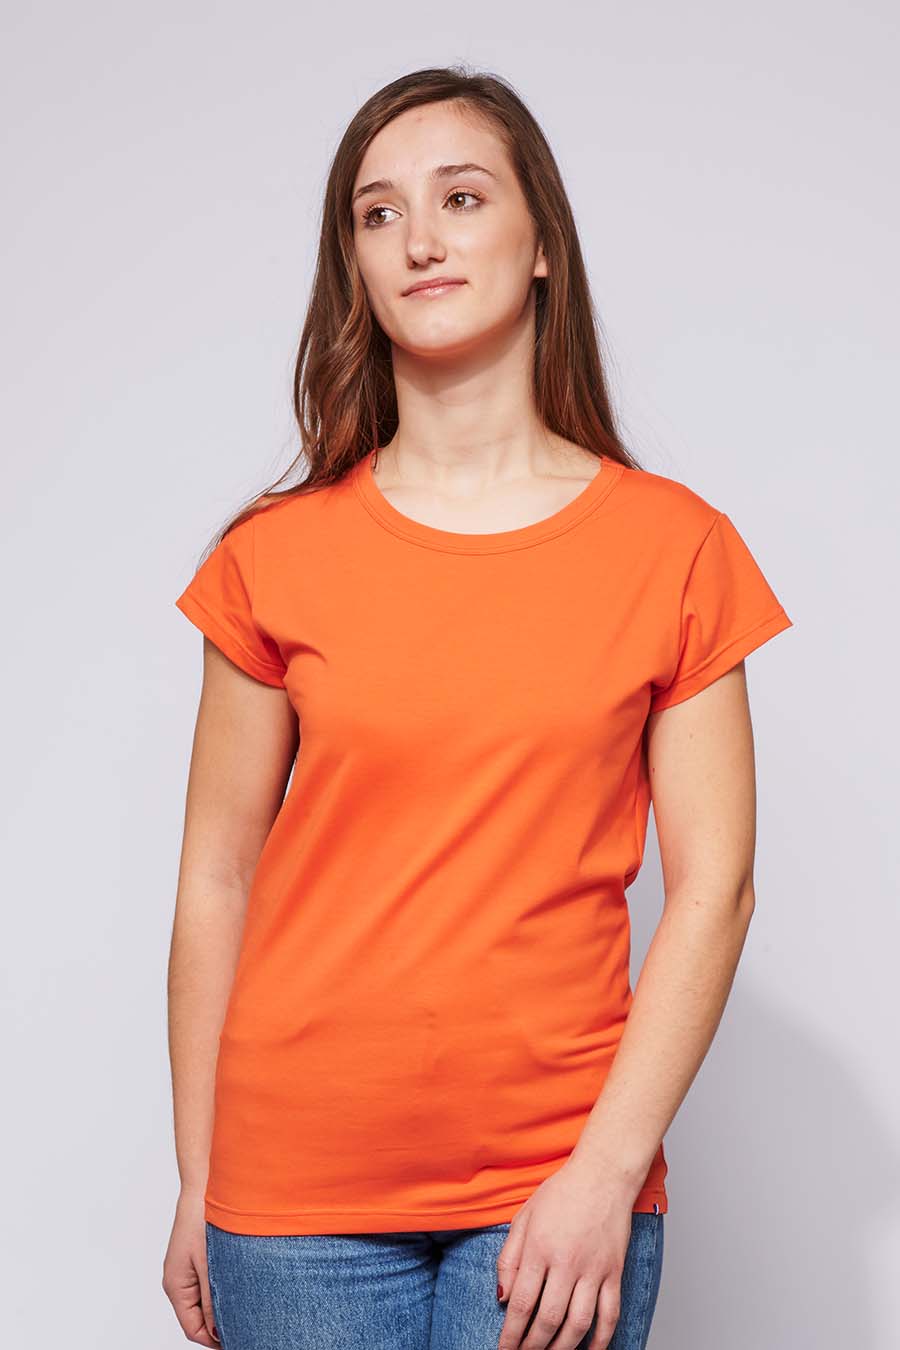 Tee Shirt Louison Orange 1.jpg